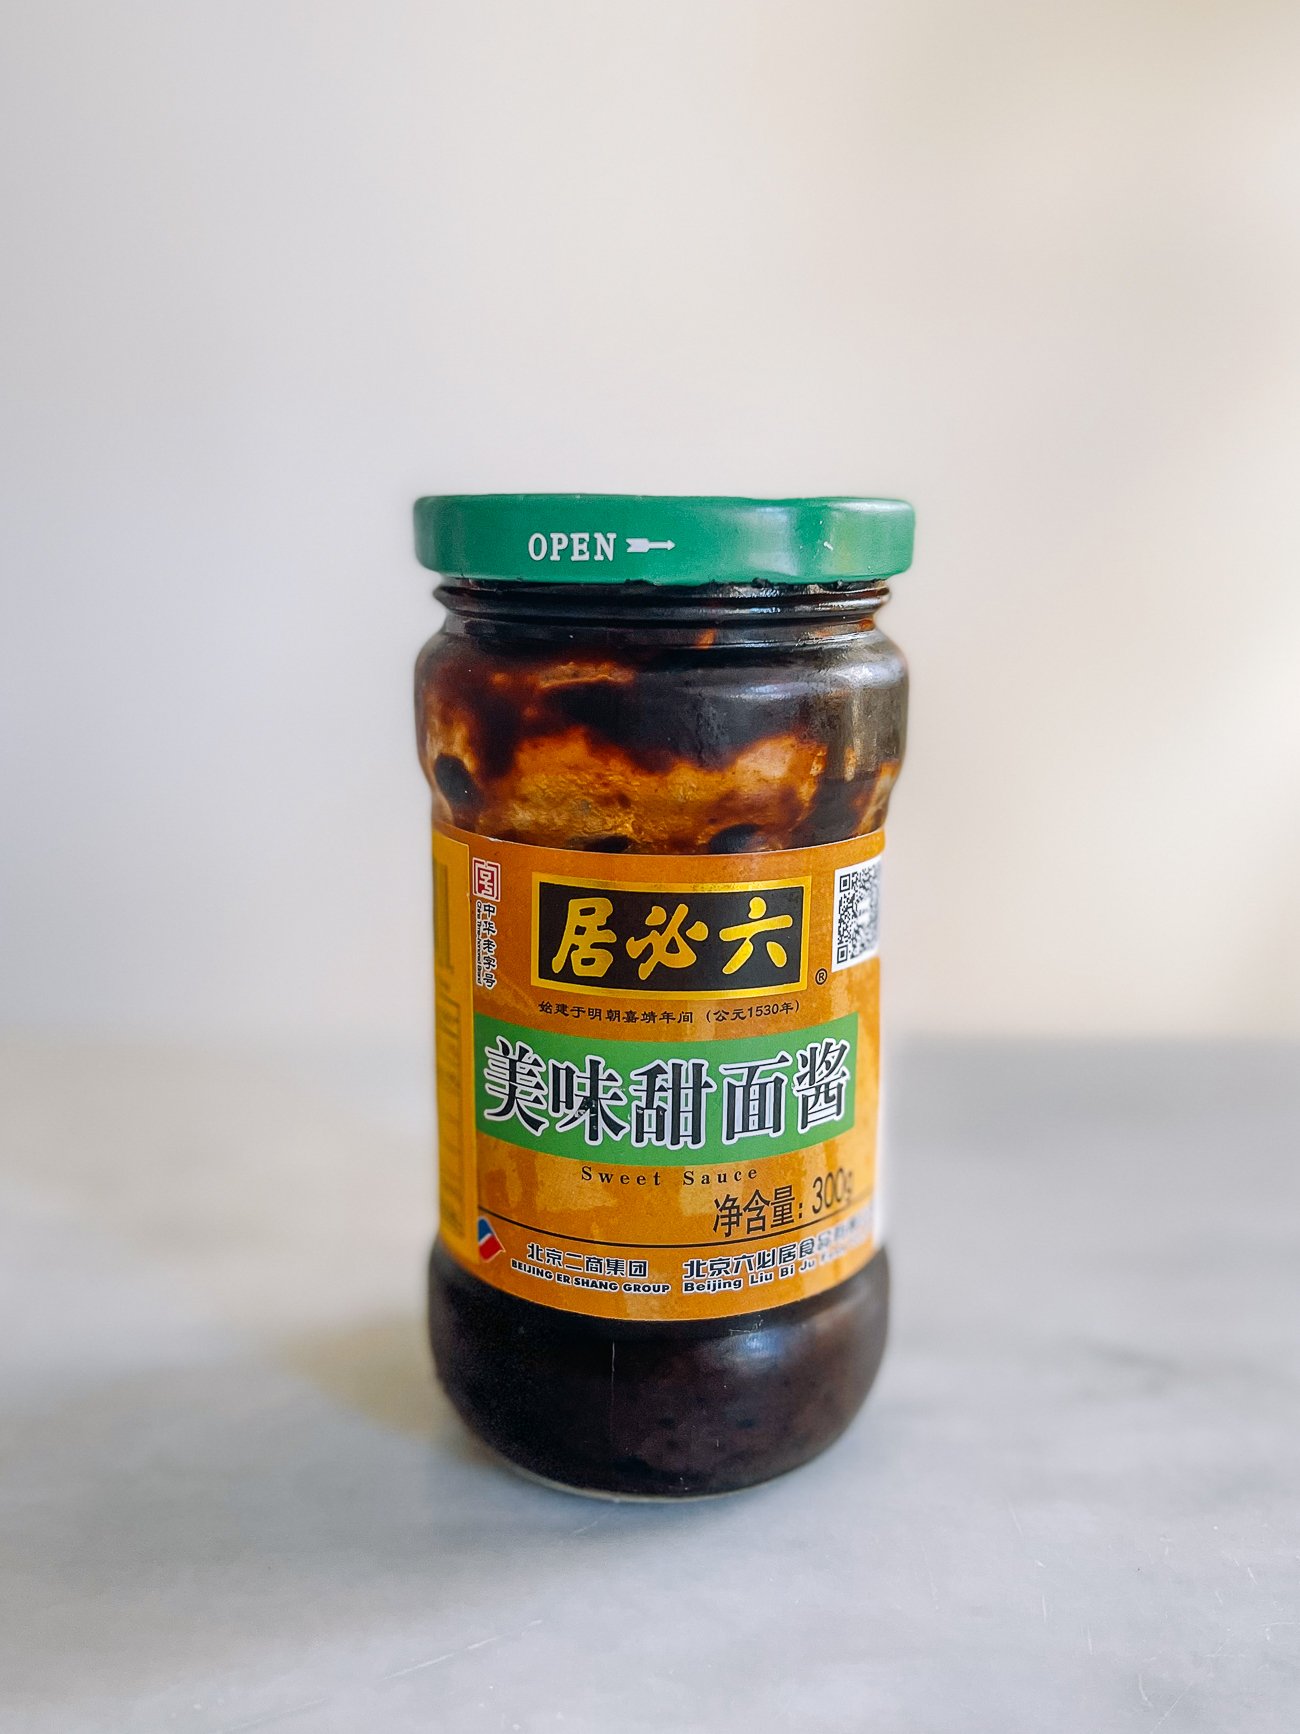 jar of tian mian jiang sweet flour sauce